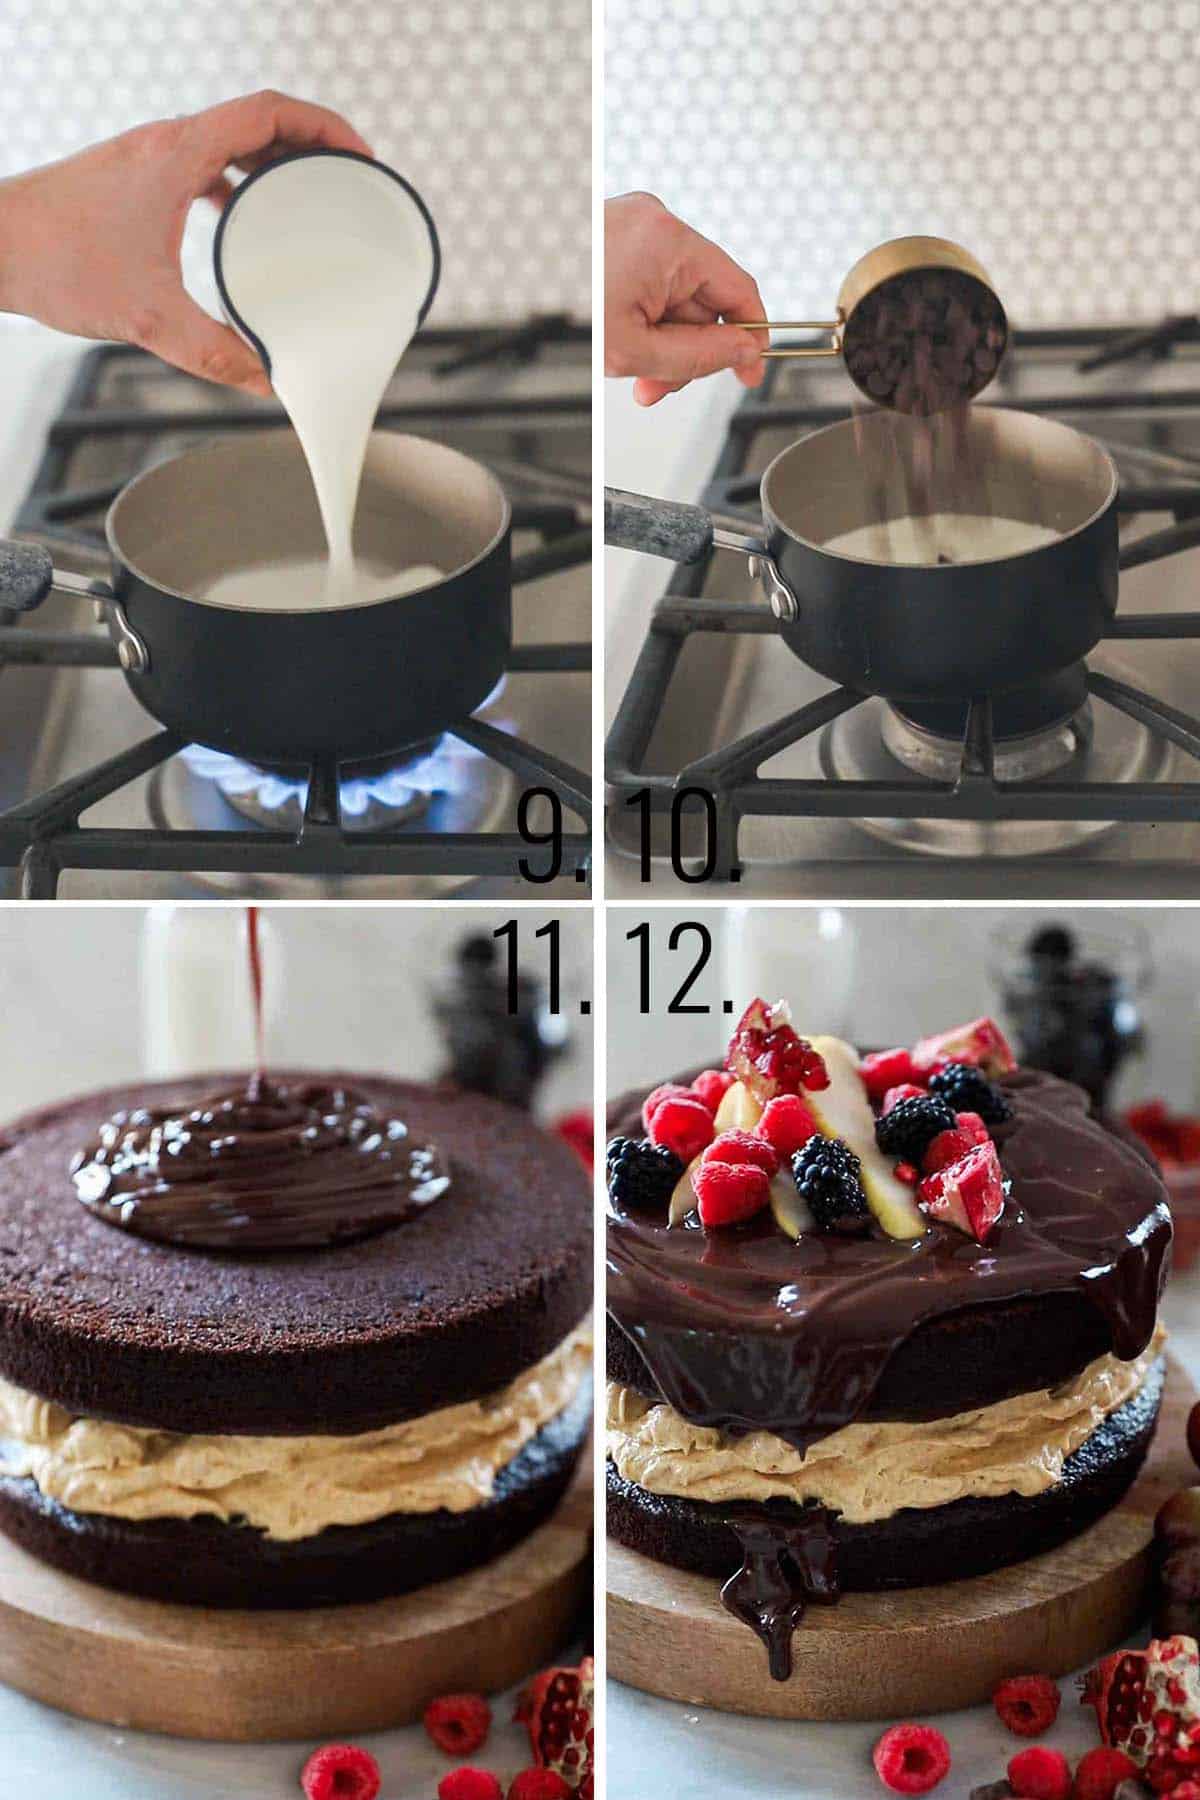 How to make chocolate ganache.